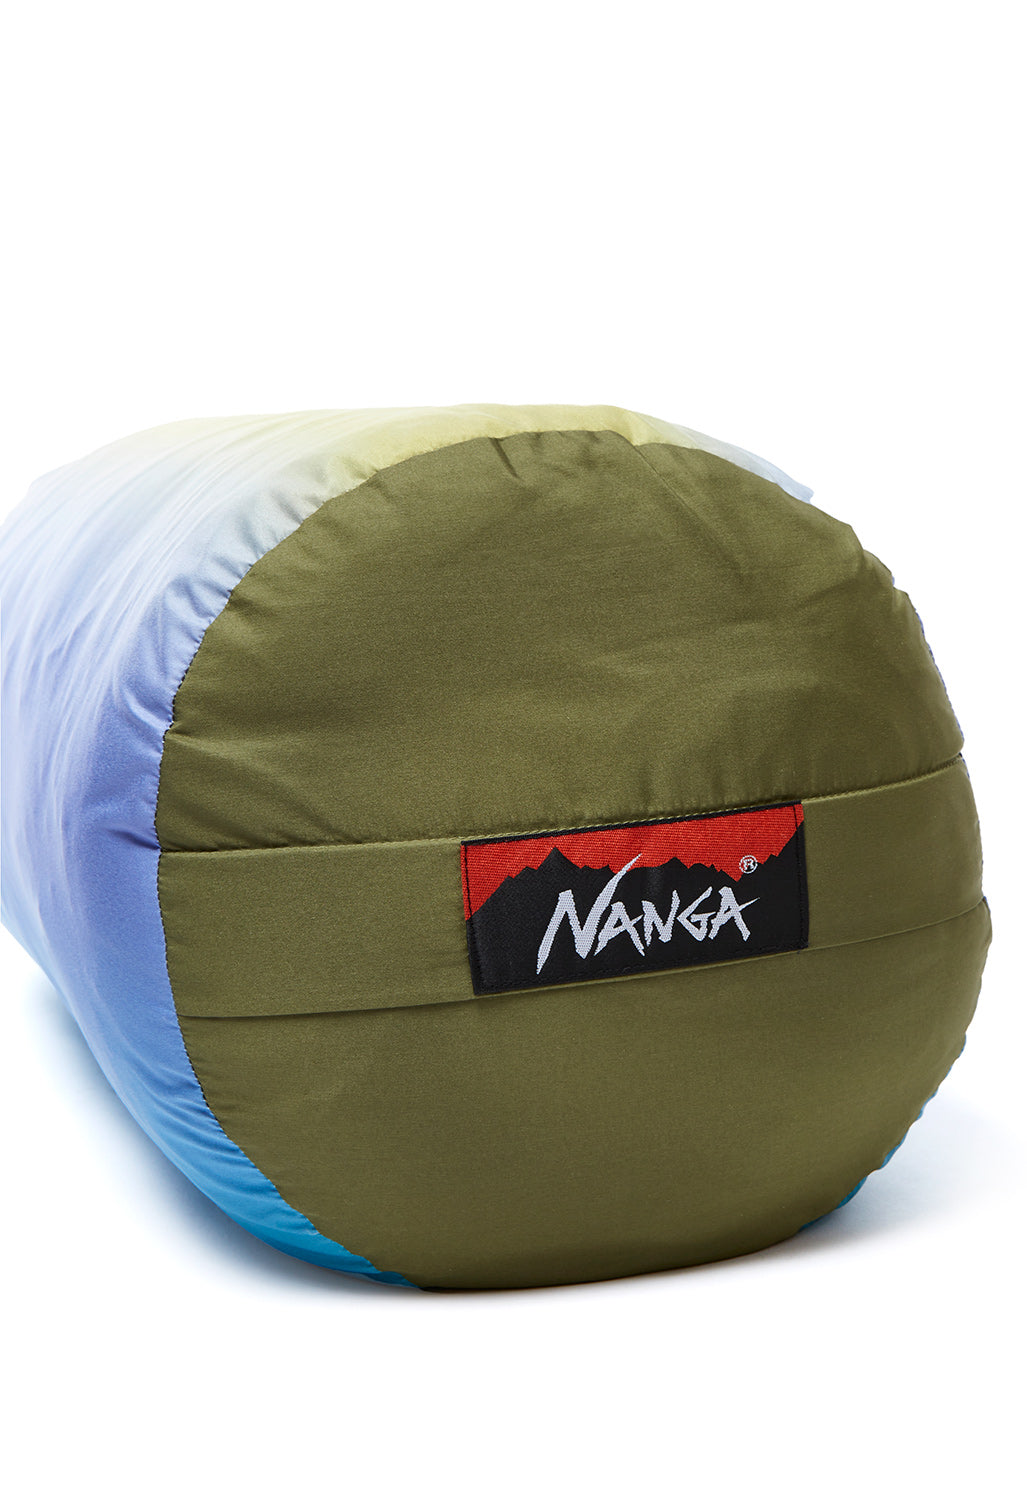 Nanga Down Blanket Single - Sandy Mountain